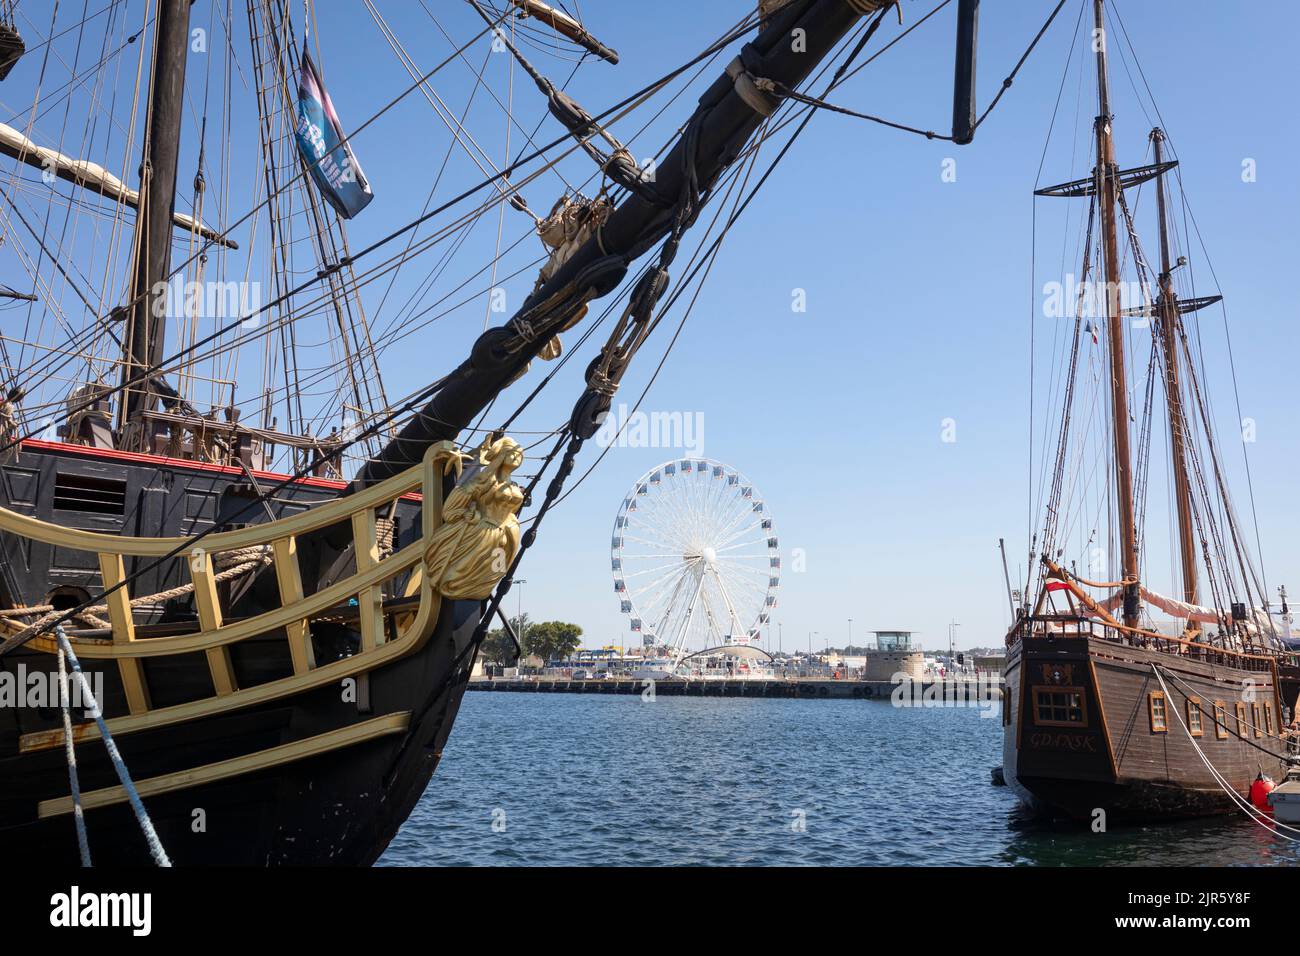 Porto di Saint Malo con vecchie navi storiche a vela in legno e una ruota panoramica Foto Stock